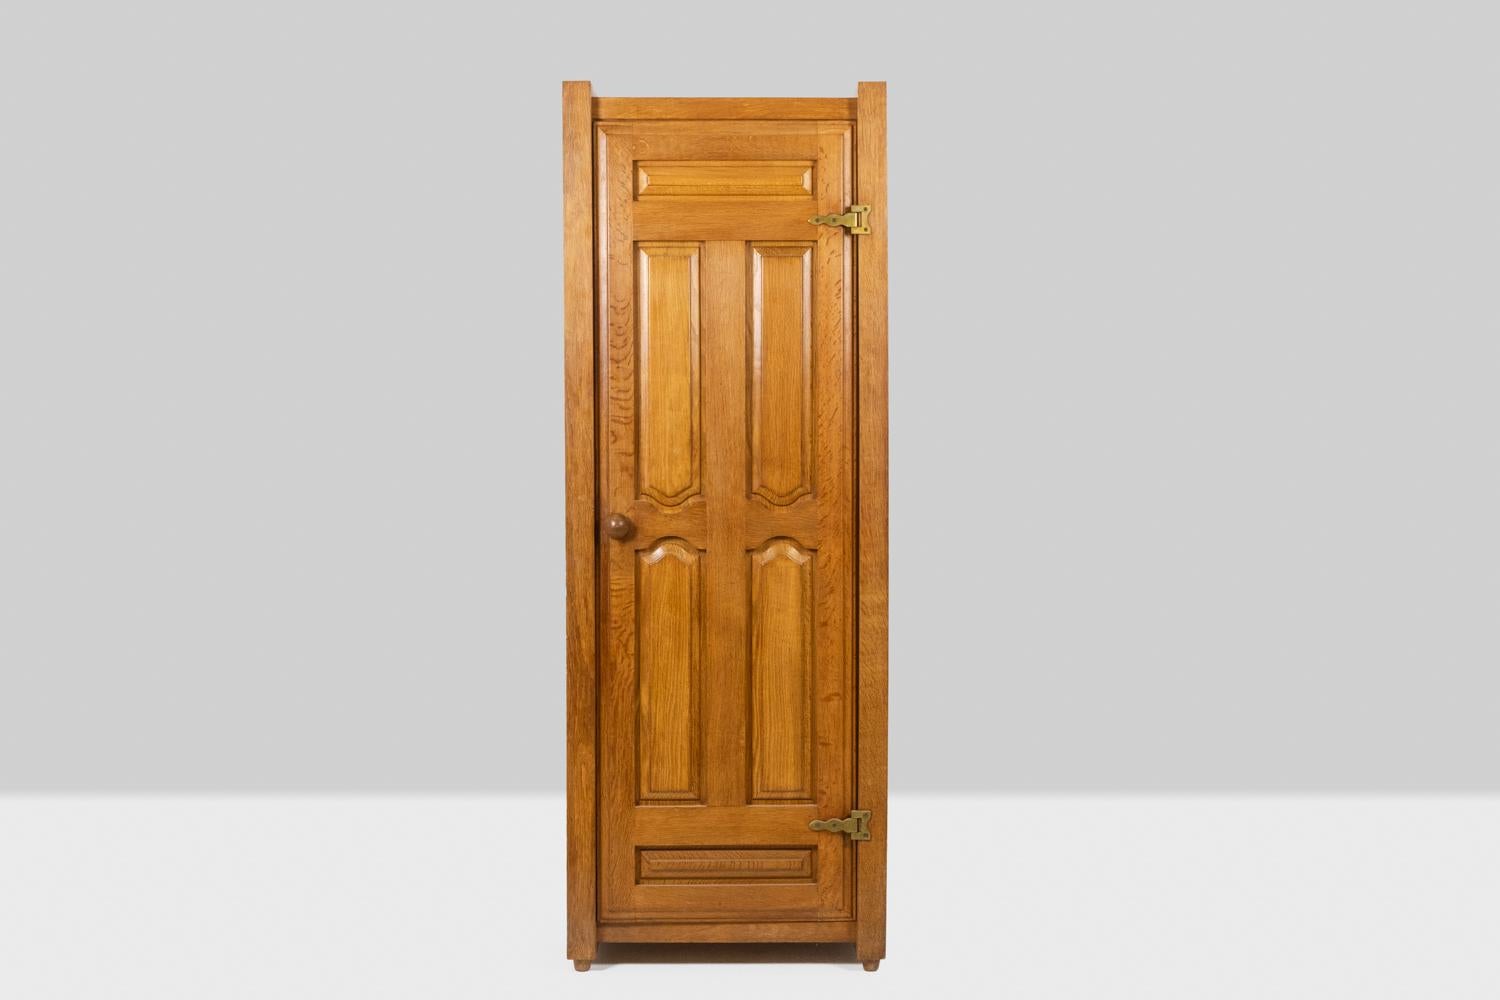 Guillerme und Chambron, von.

Kleiderschrank aus blonder massiver Eiche, rechteckig, mit einer Tür zum Öffnen. Scharniere aus mattgoldenem Messing.

Französisches Werk aus den 1970er Jahren.
